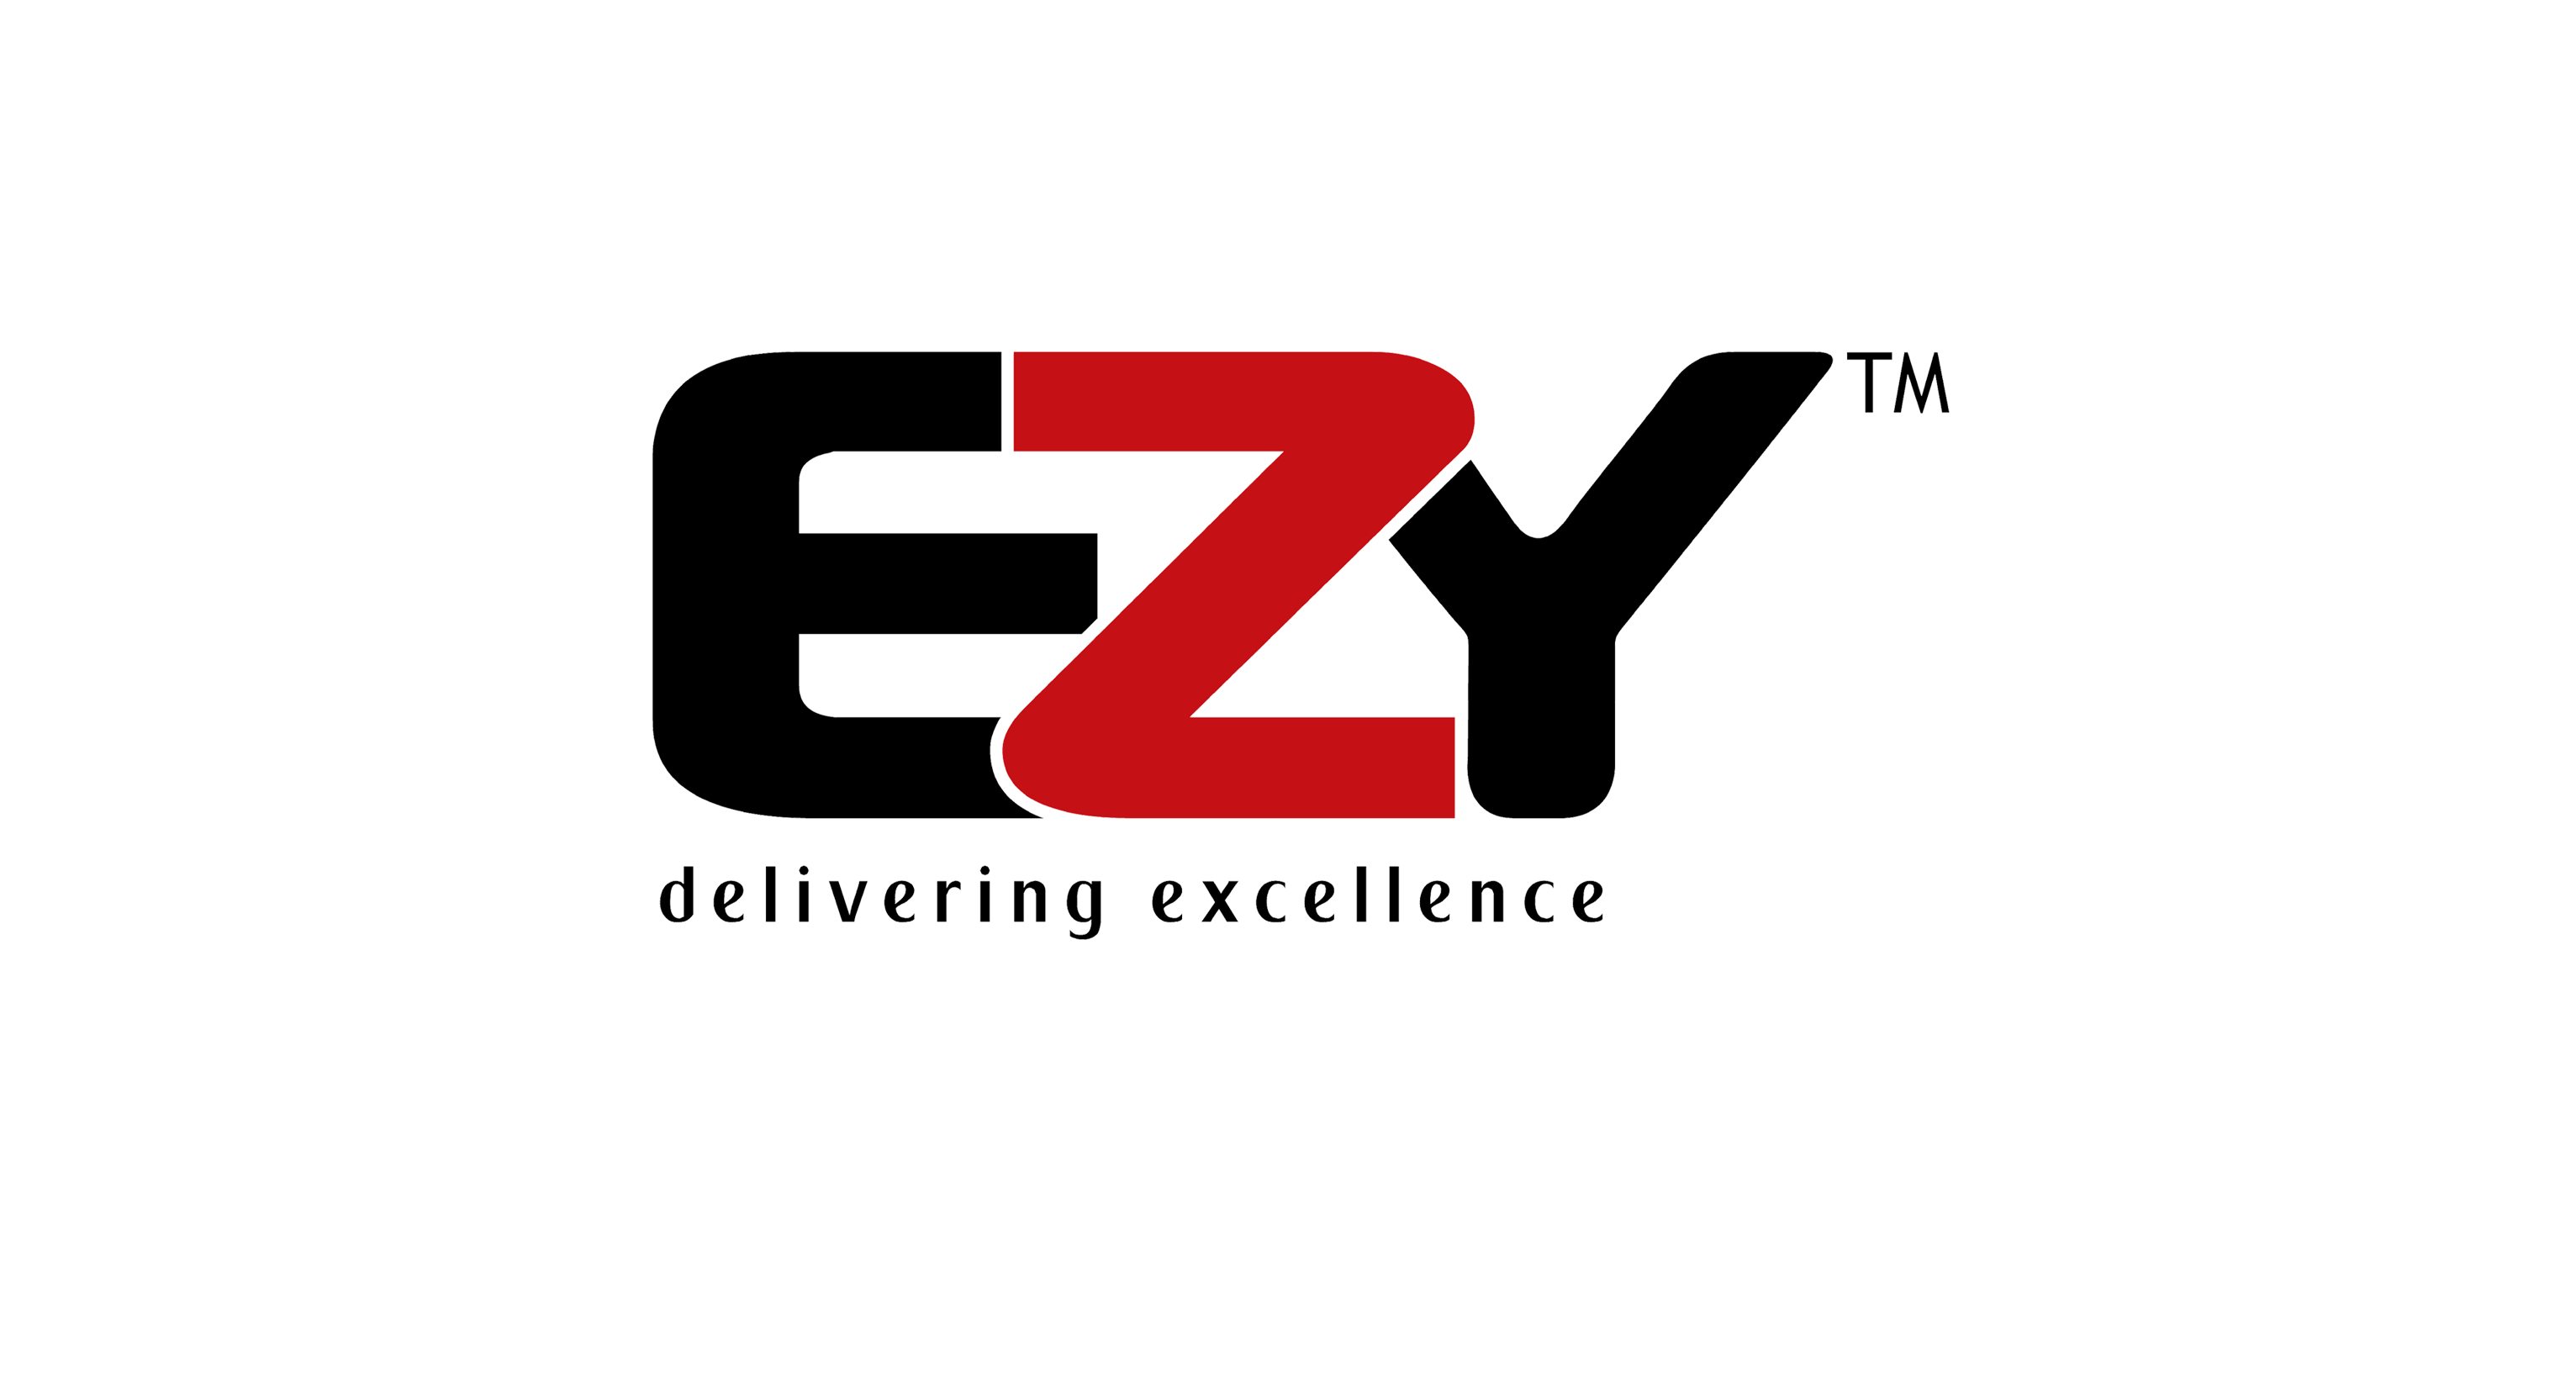 Ezy Logo - EZY Technologies Best IT Distribution Network in Pakistan